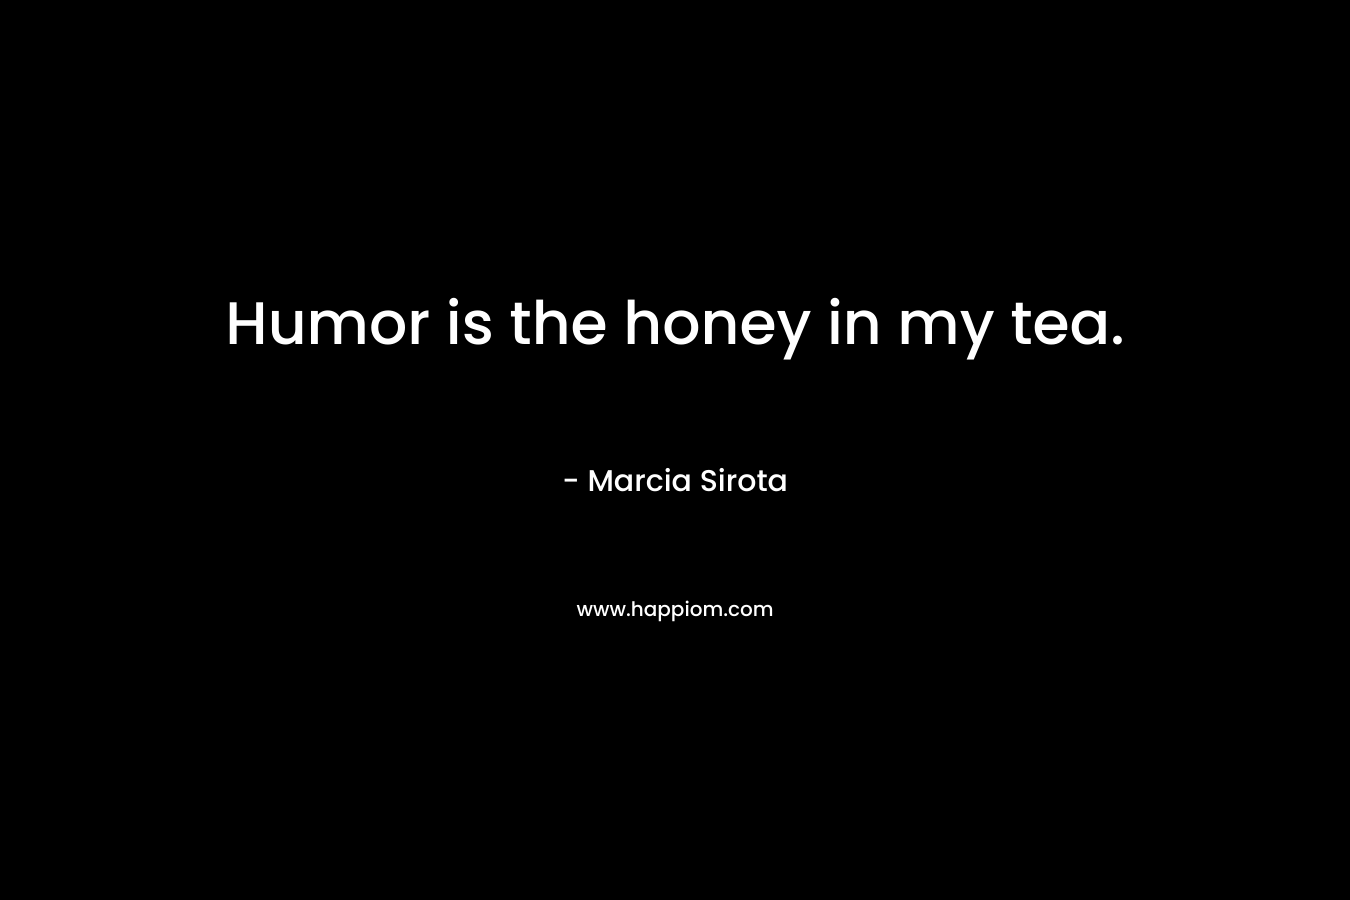 Humor is the honey in my tea.